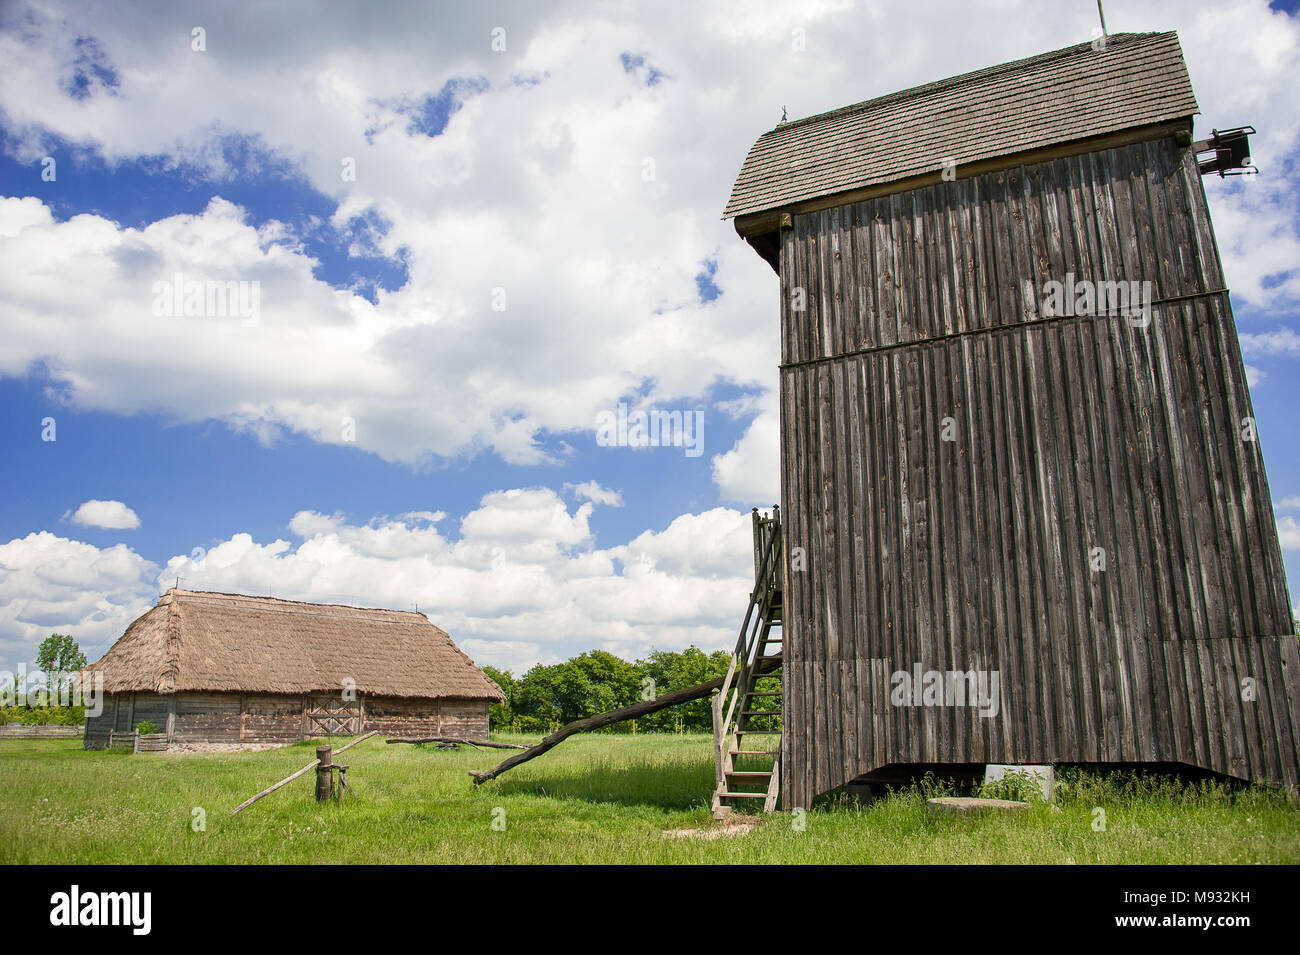 Musée du Village de Mazovie Sierpc. Une reconstruction de village dans la campagne polonaise avec la ferme, un vieux moulin et bleu, ciel nuageux Banque D'Images